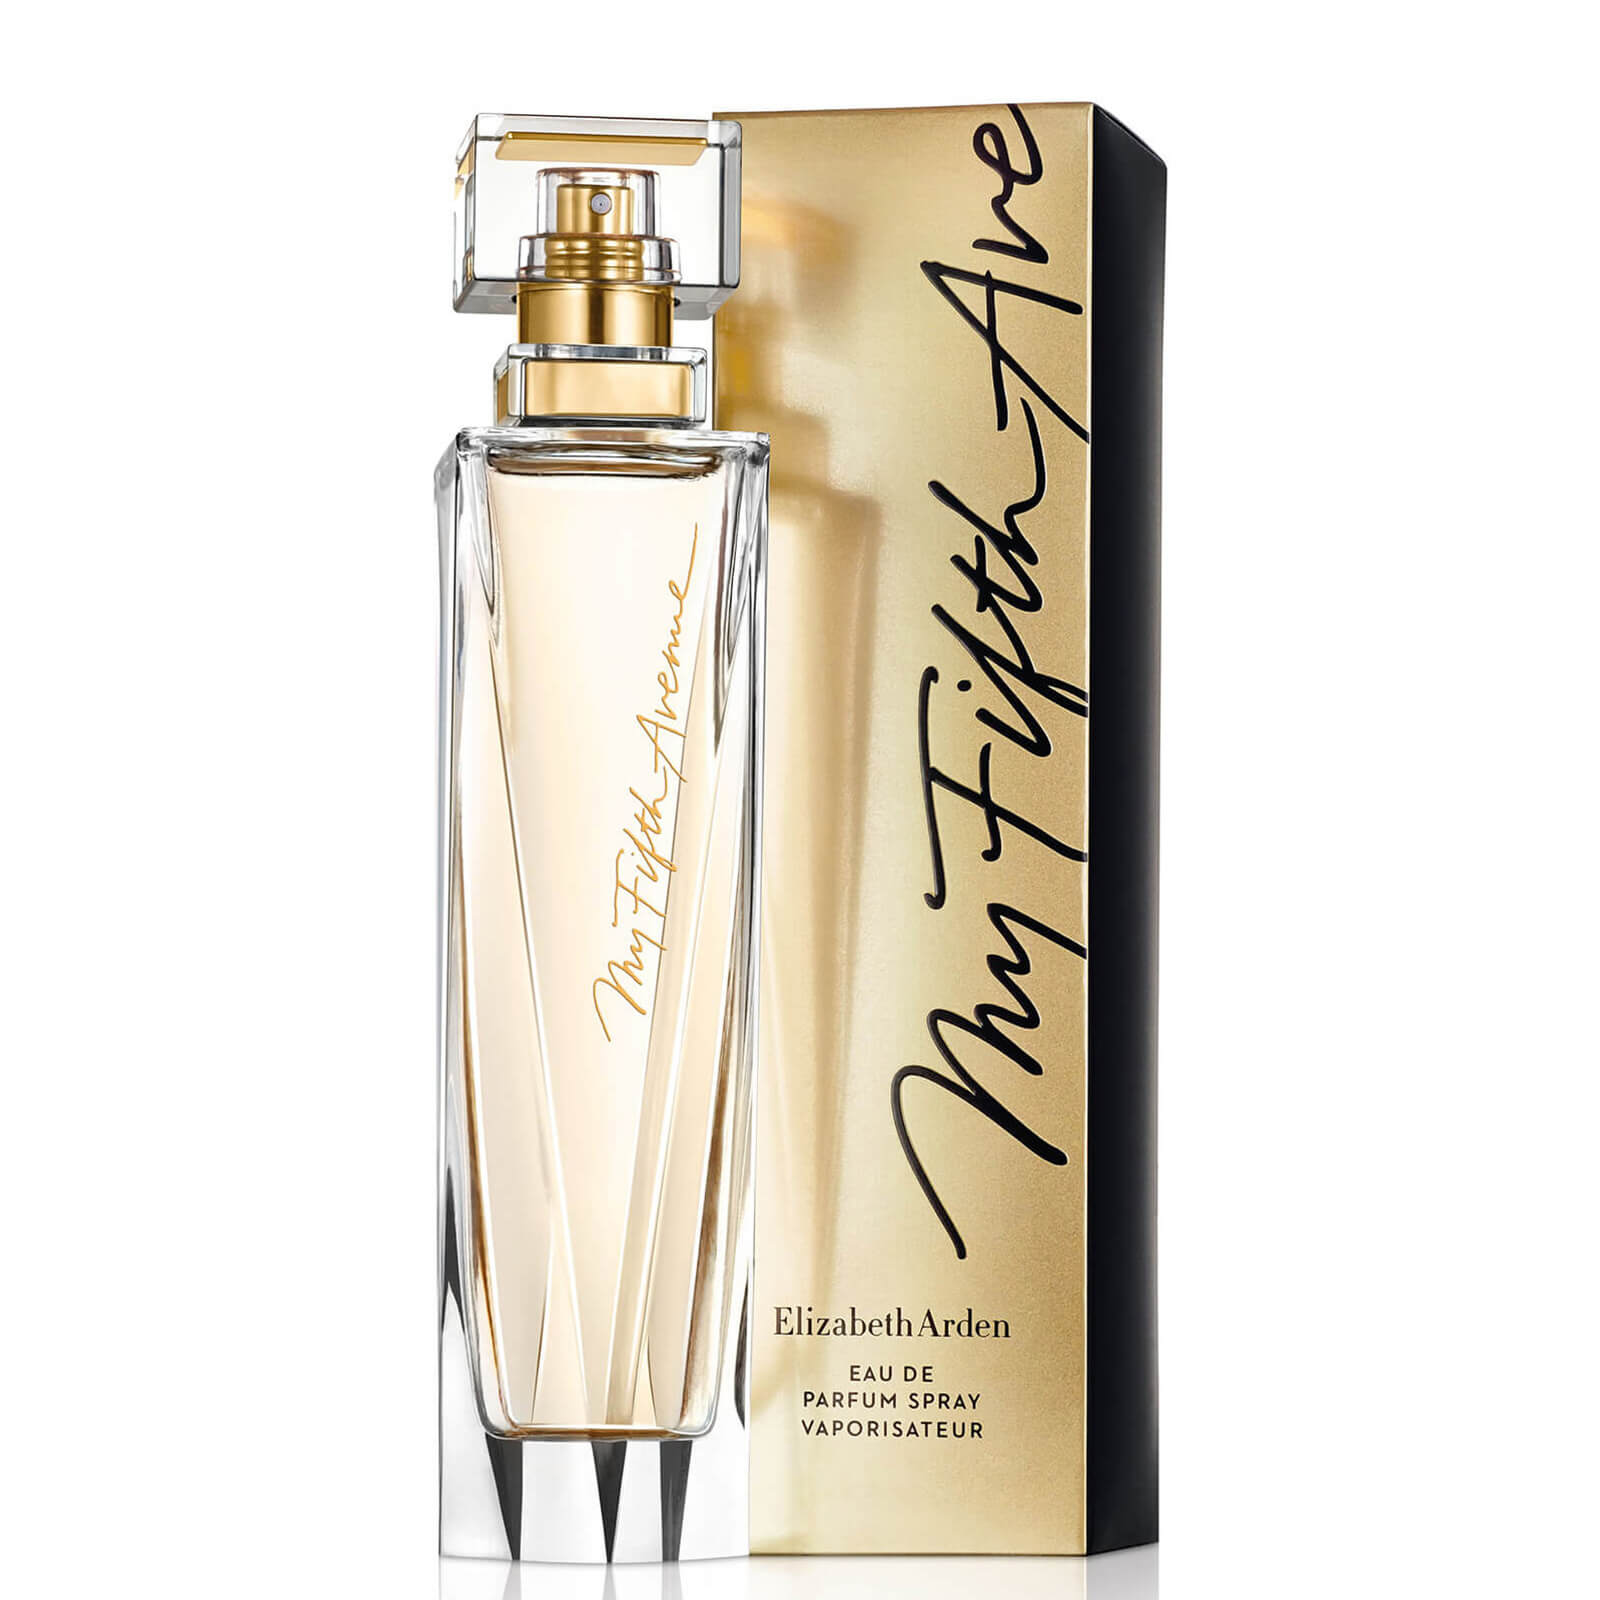 Photos - Women's Fragrance Elizabeth Arden My 5th Avenue Eau de Parfum 50ml A0115076 